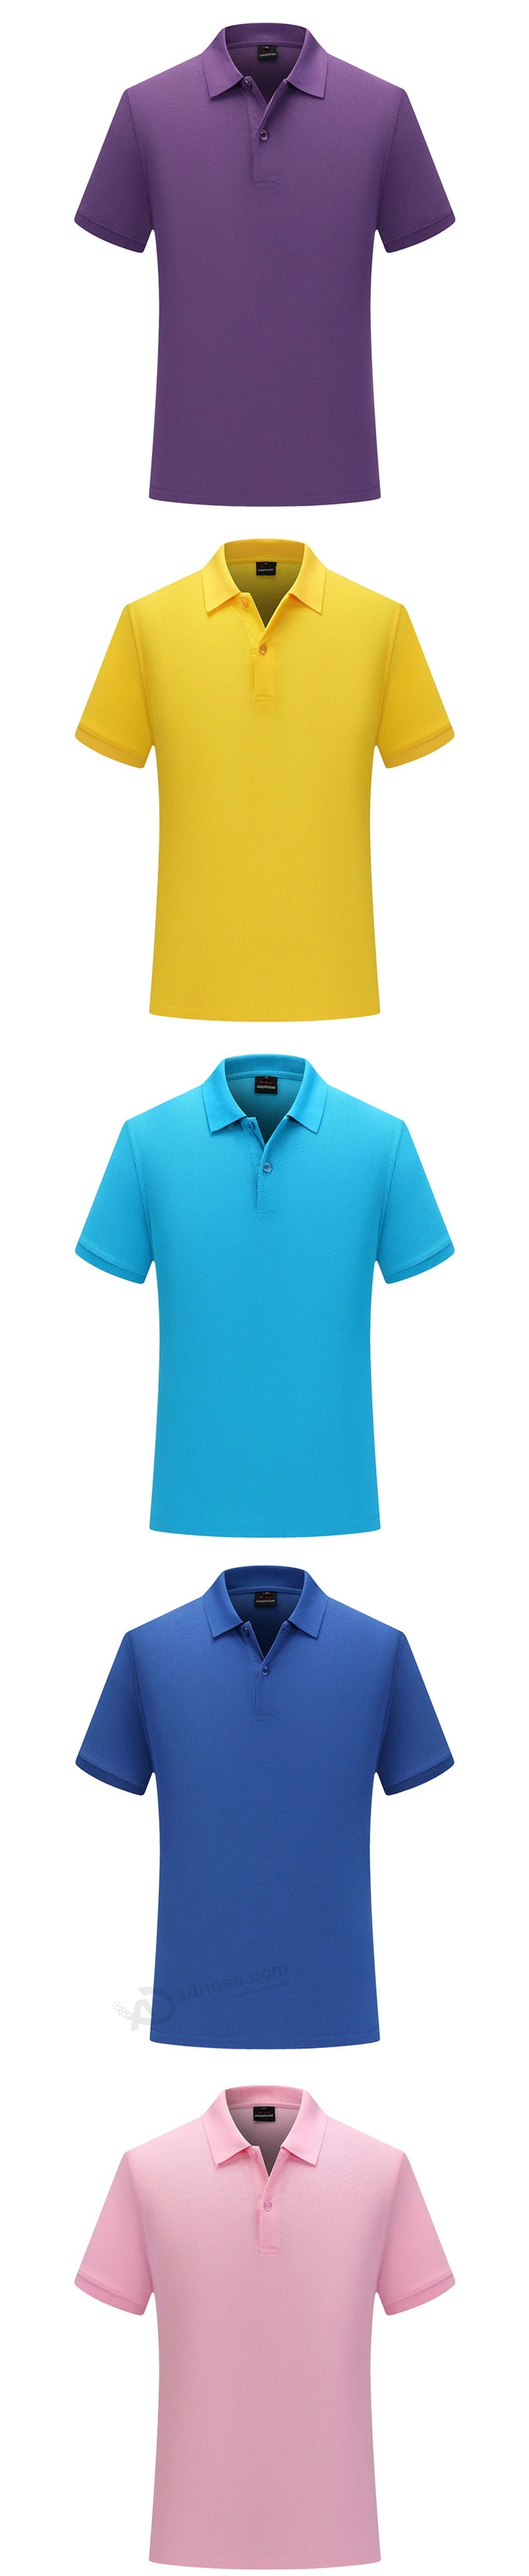 폴로 셔츠 맞춤형 단색 티셔츠면 작업복 반팔 맞춤형 자수 광고 셔츠 DIY 인쇄 로고